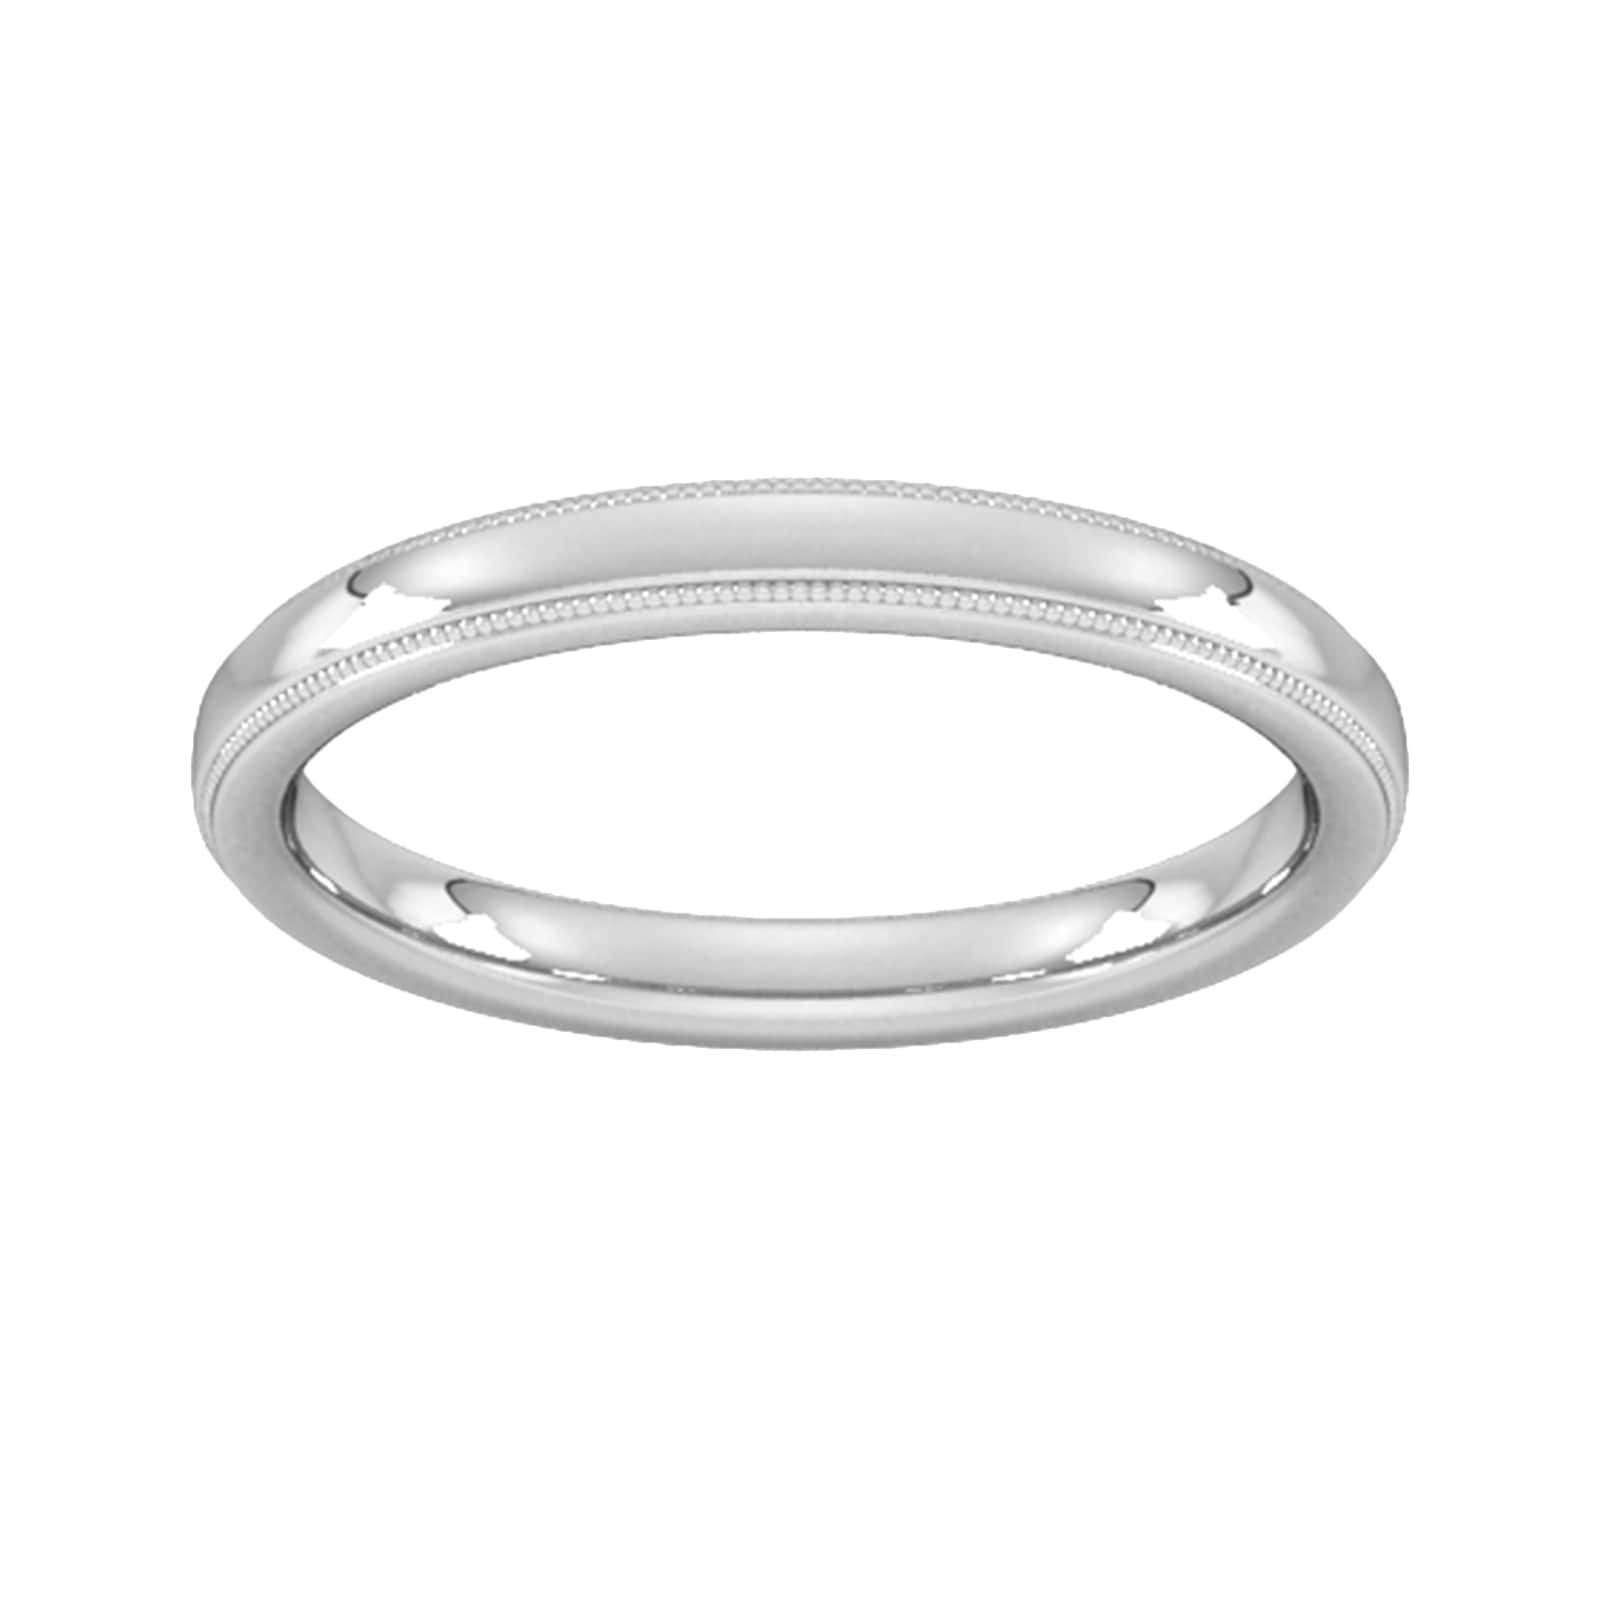 2.5mm Slight Court Standard Milgrain Edge Wedding Ring In 9 Carat White Gold - Ring Size Q